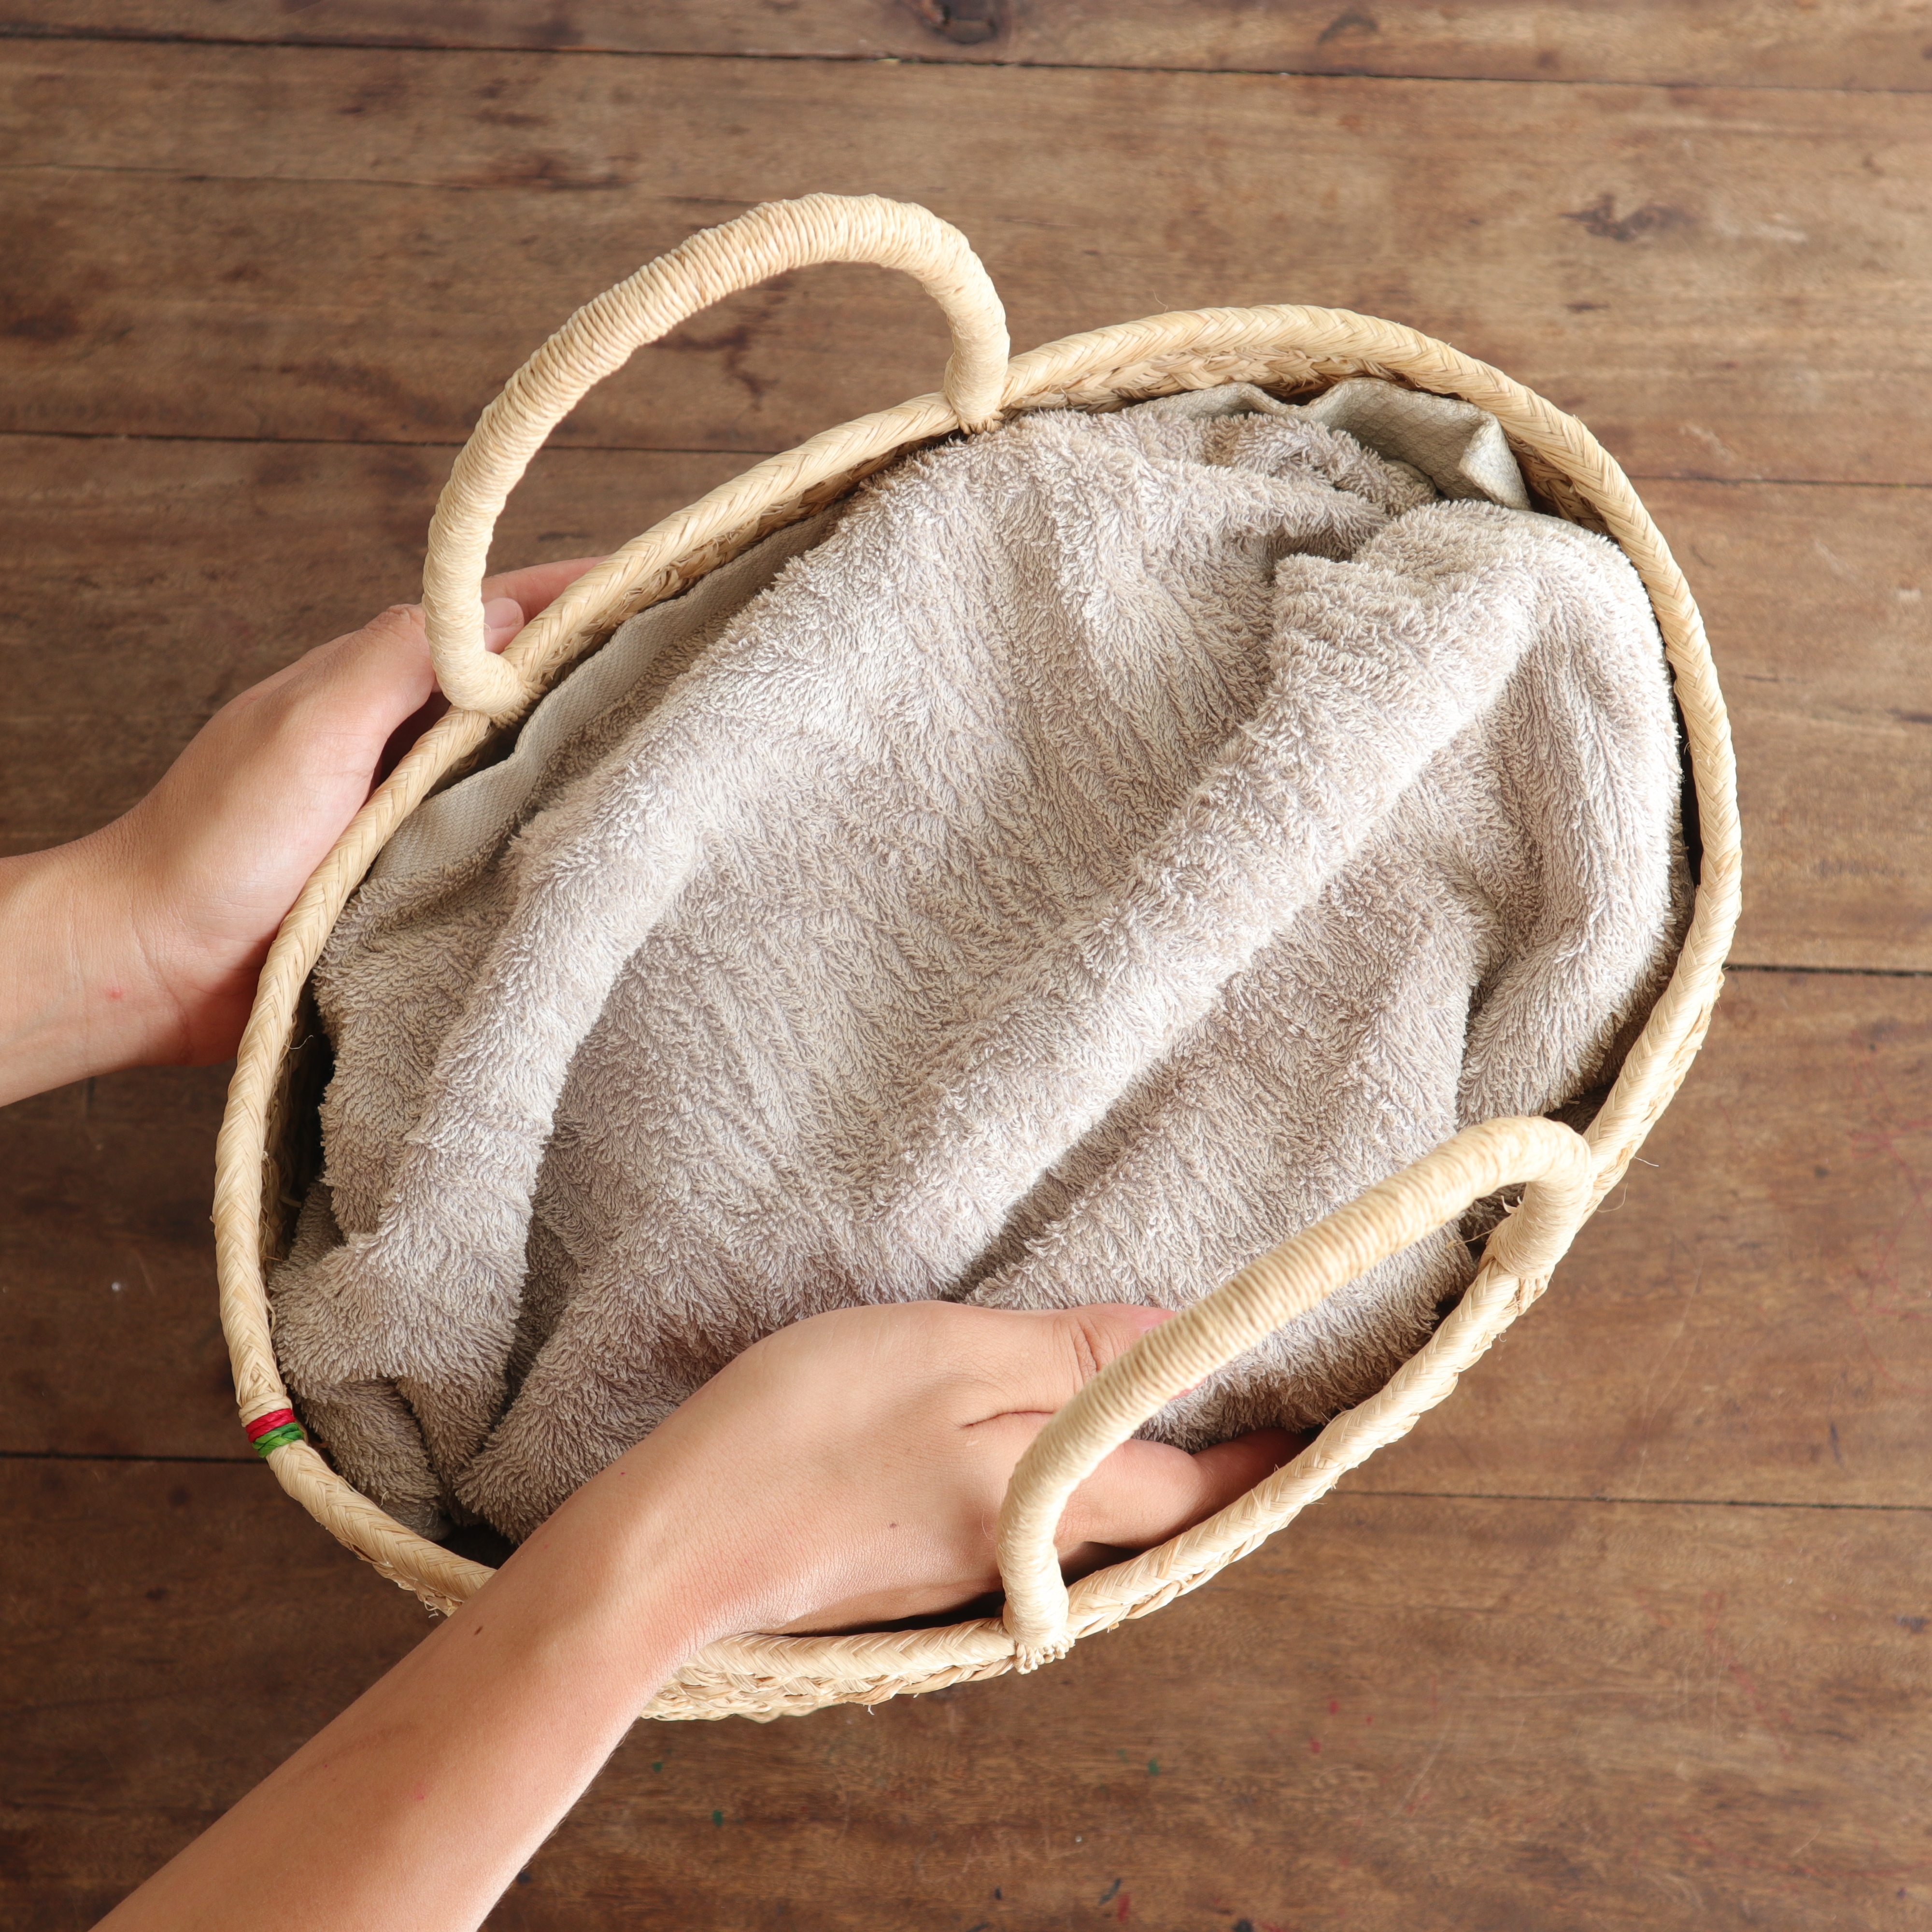 汚れや雨などで濡れた場合は、固く絞った布で拭いて、タオルを入れて風通しの良い日陰で乾かしてください。